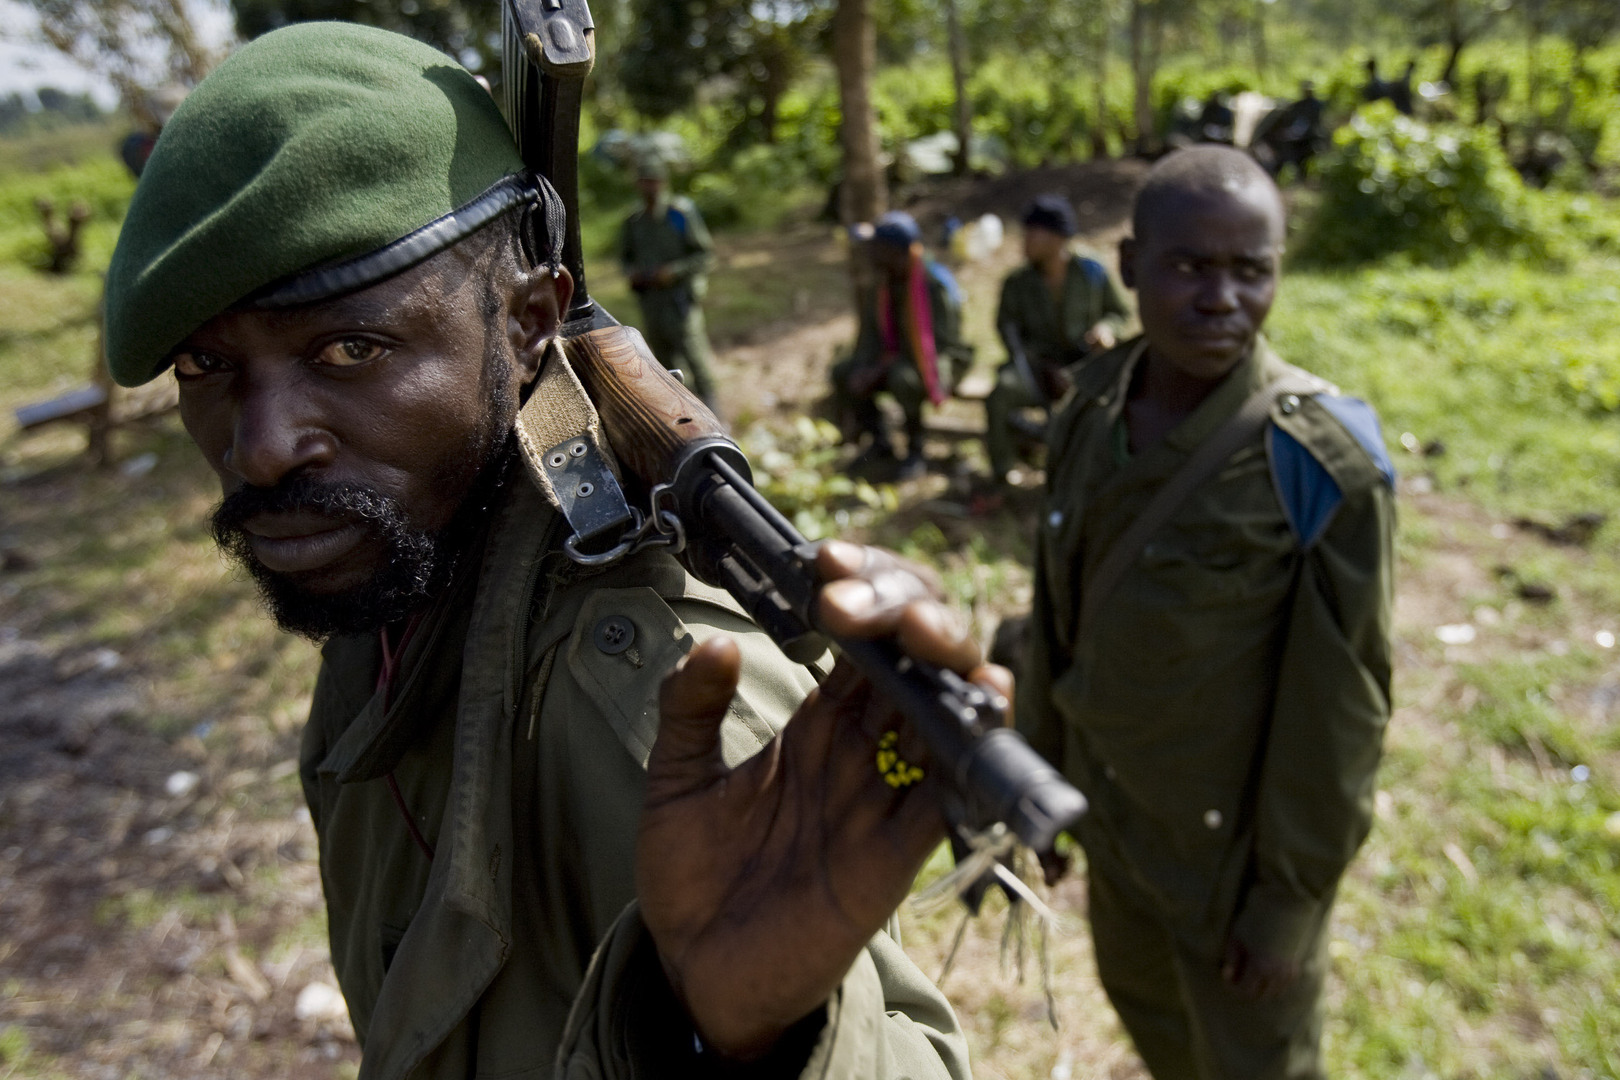 سلطات إفريقيا الوسطى ترحب باستضافة قاعدة عسكرية روسية على أراضيها